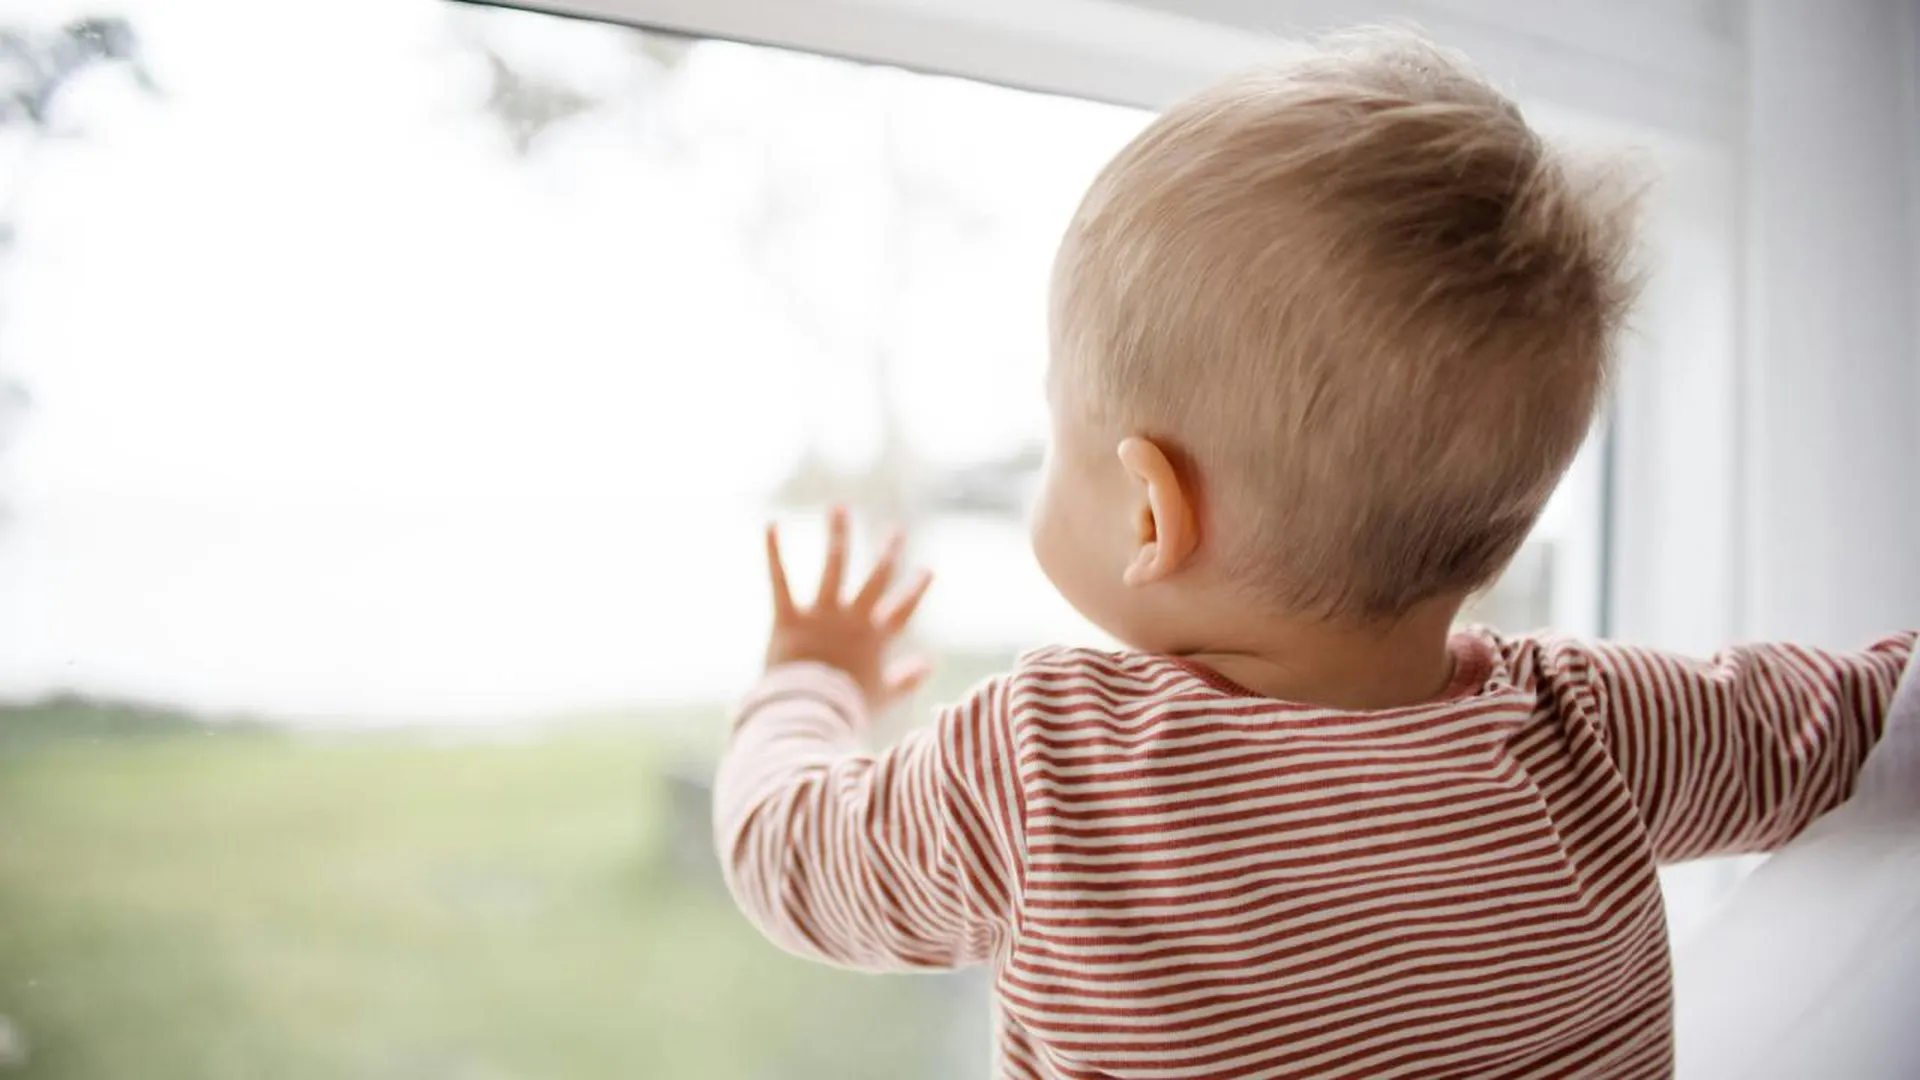 Подмосковным родителям напомнили, что москитная сетка не спасет ребенка от выпадения из окна